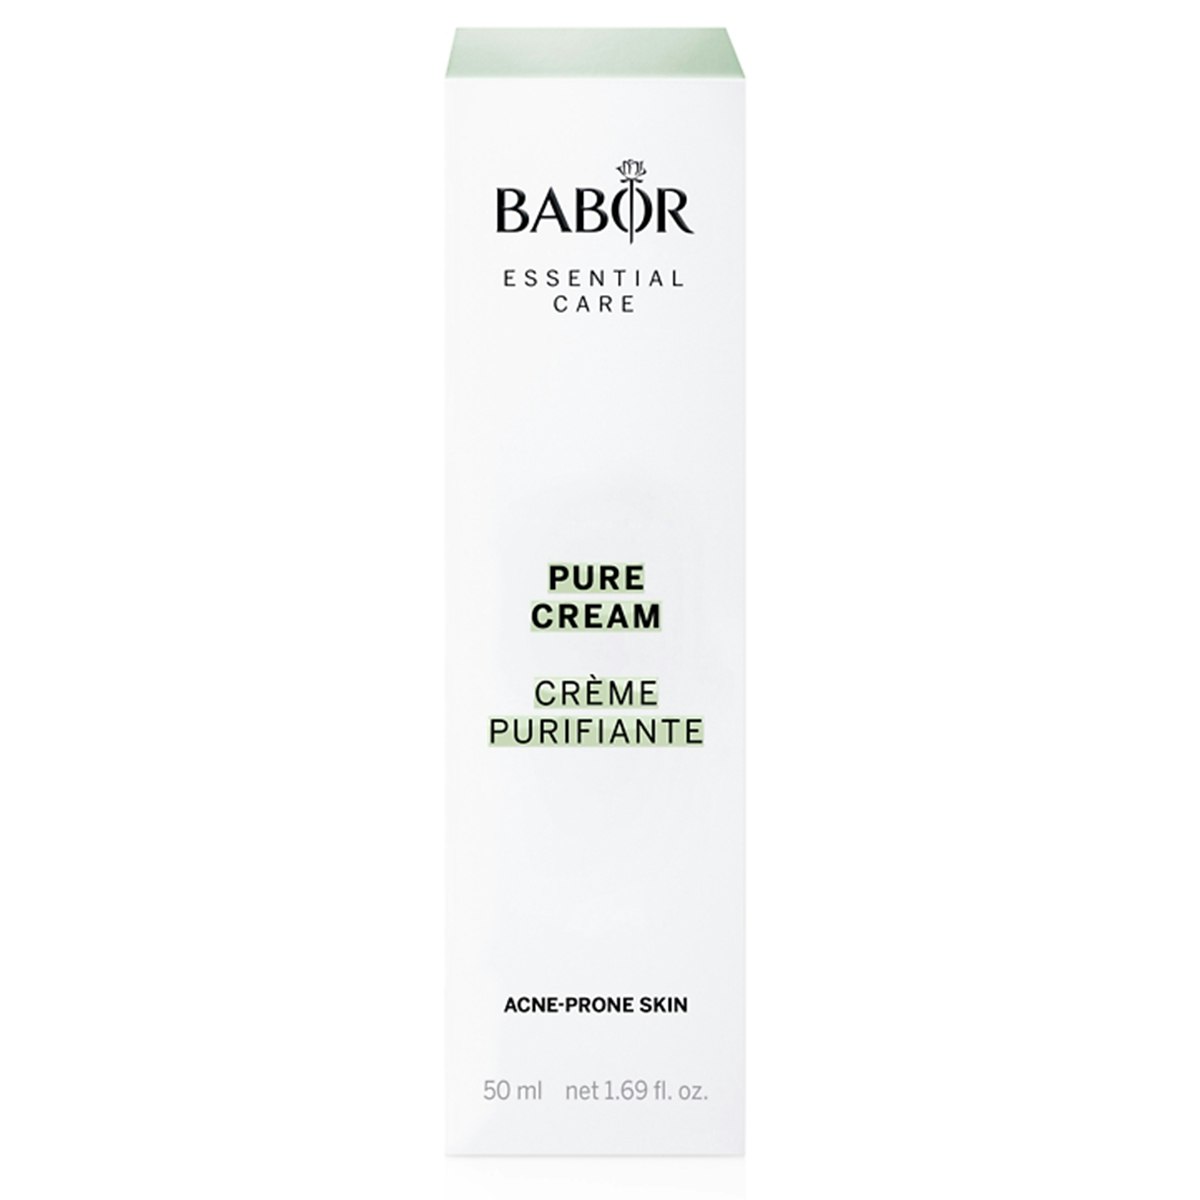 Babor Essential Pure Cream 50 ml - En lett krem som regulerer  talgproduksjonen - Hudshop